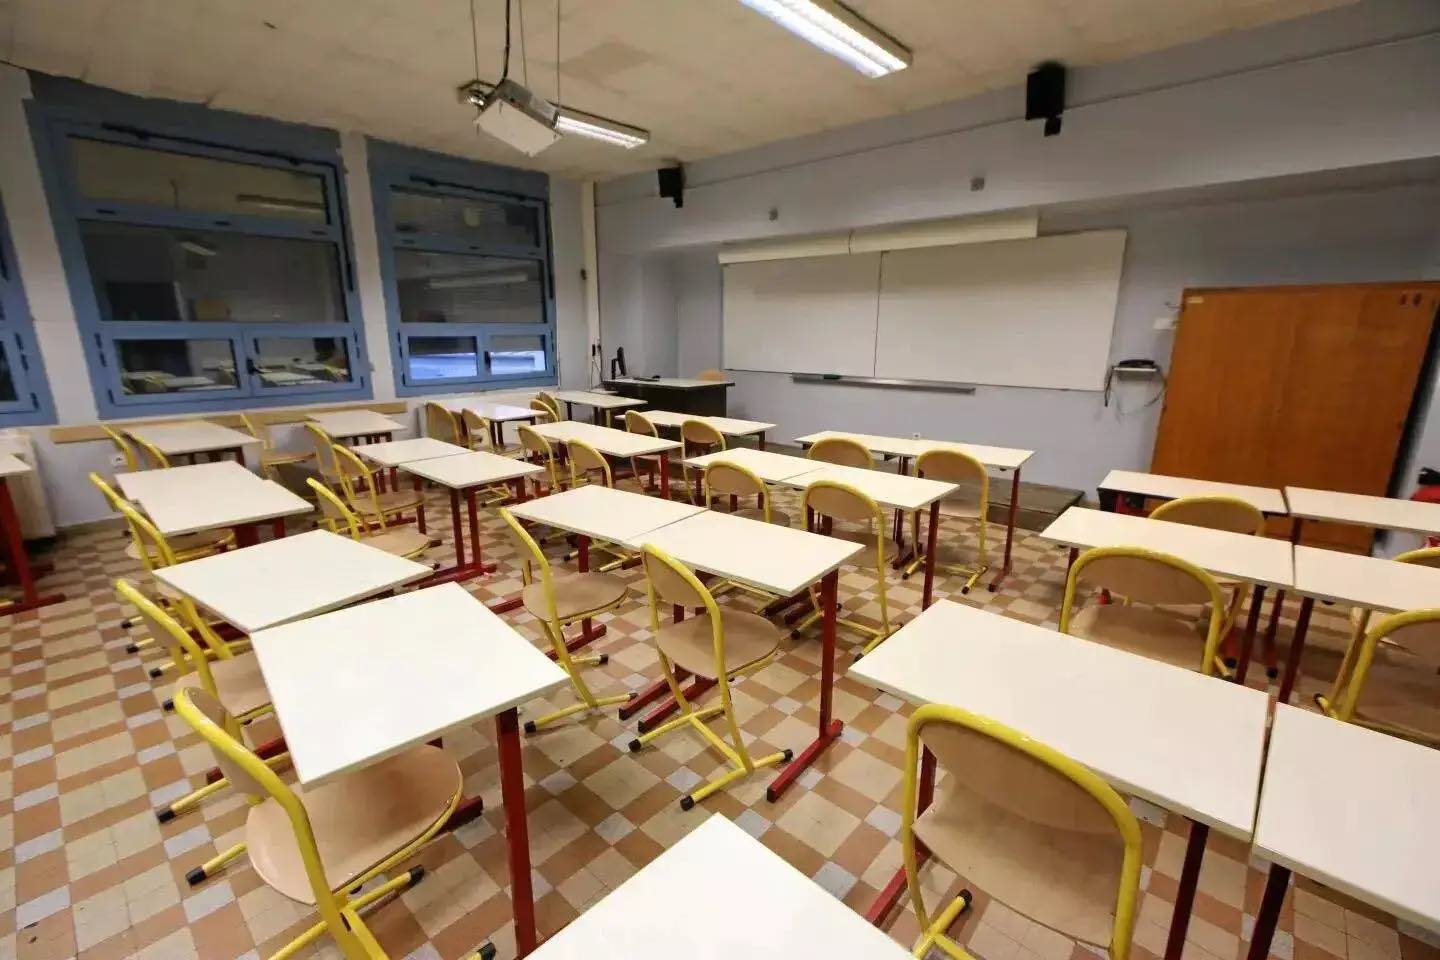 Un professeur poignardé à Saint-Jean-de-Luz : l'élève responsable risque une lourde peine